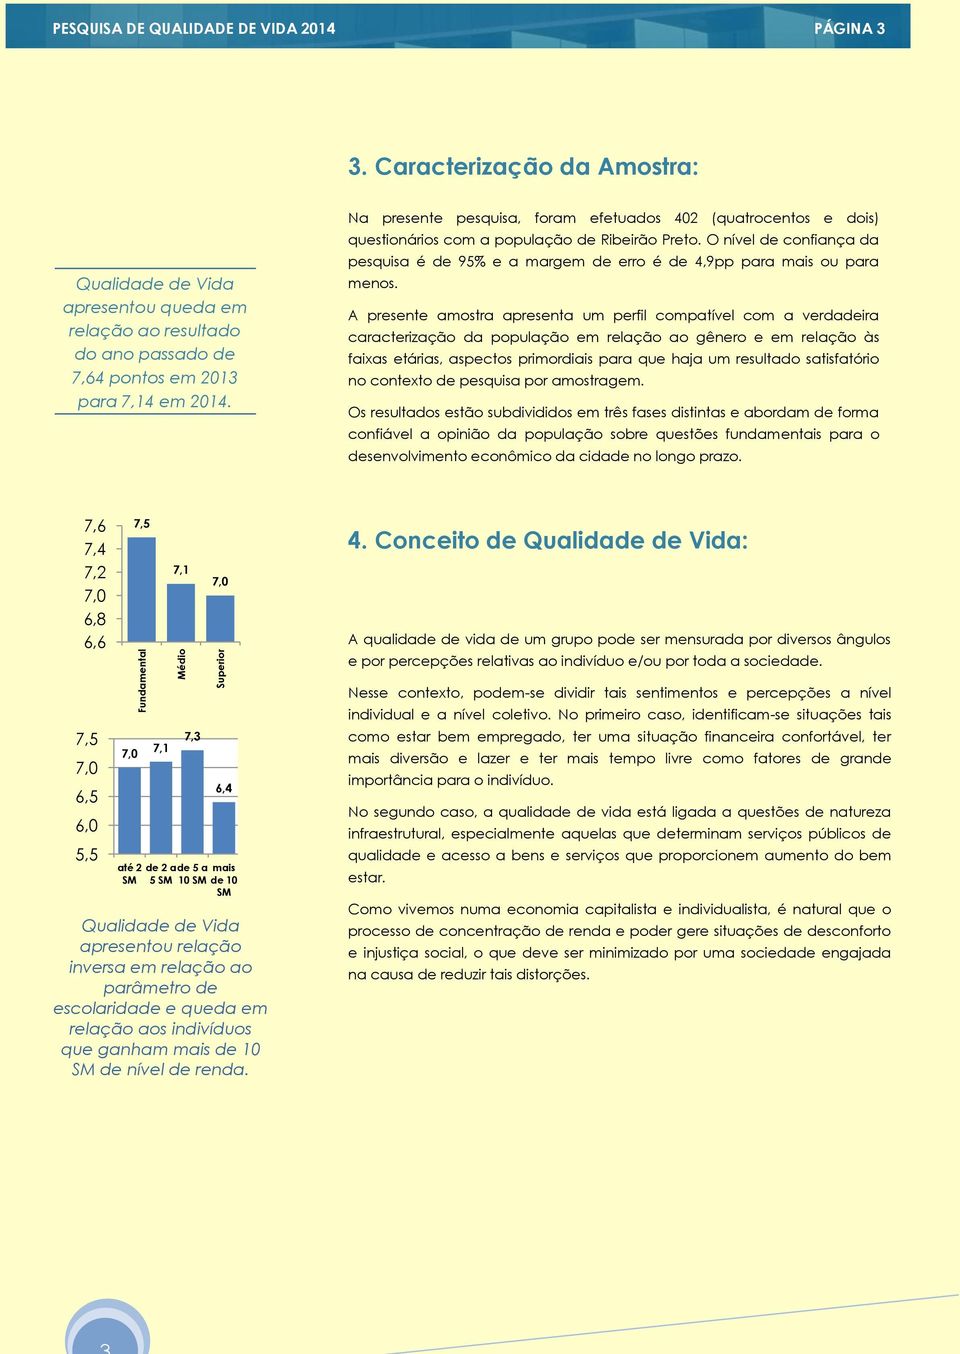 Na presente pesquisa, foram efetuados 402 (quatrocentos e dois) questionários com a população de Ribeirão Preto.